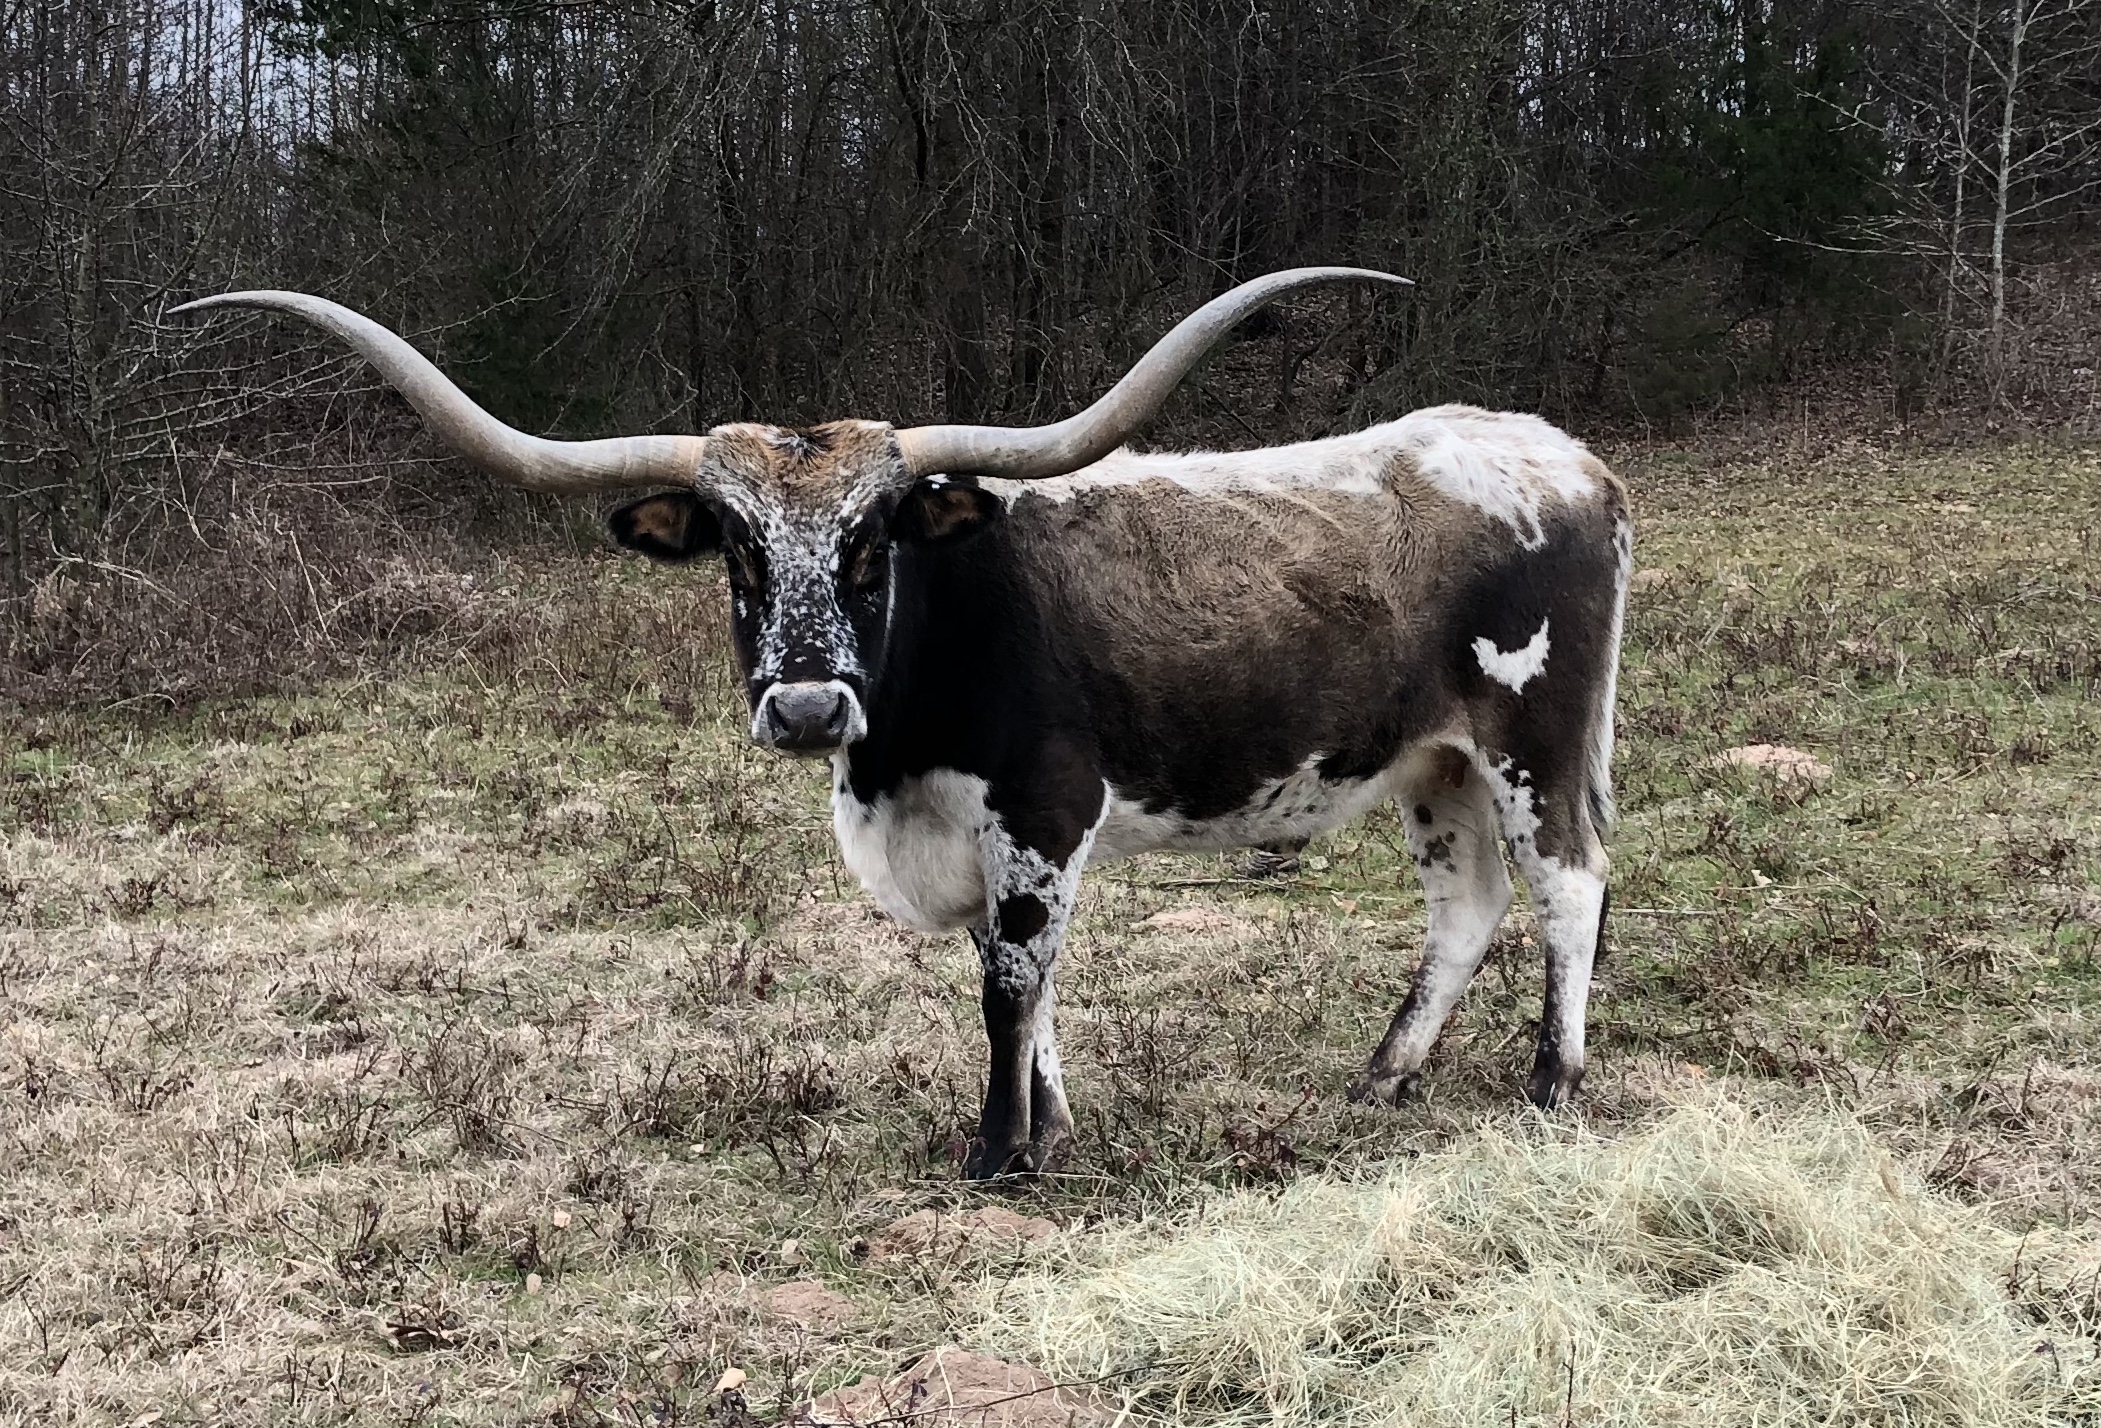 Texas Longhorn Cattle Breeding Goals2101 x 1428